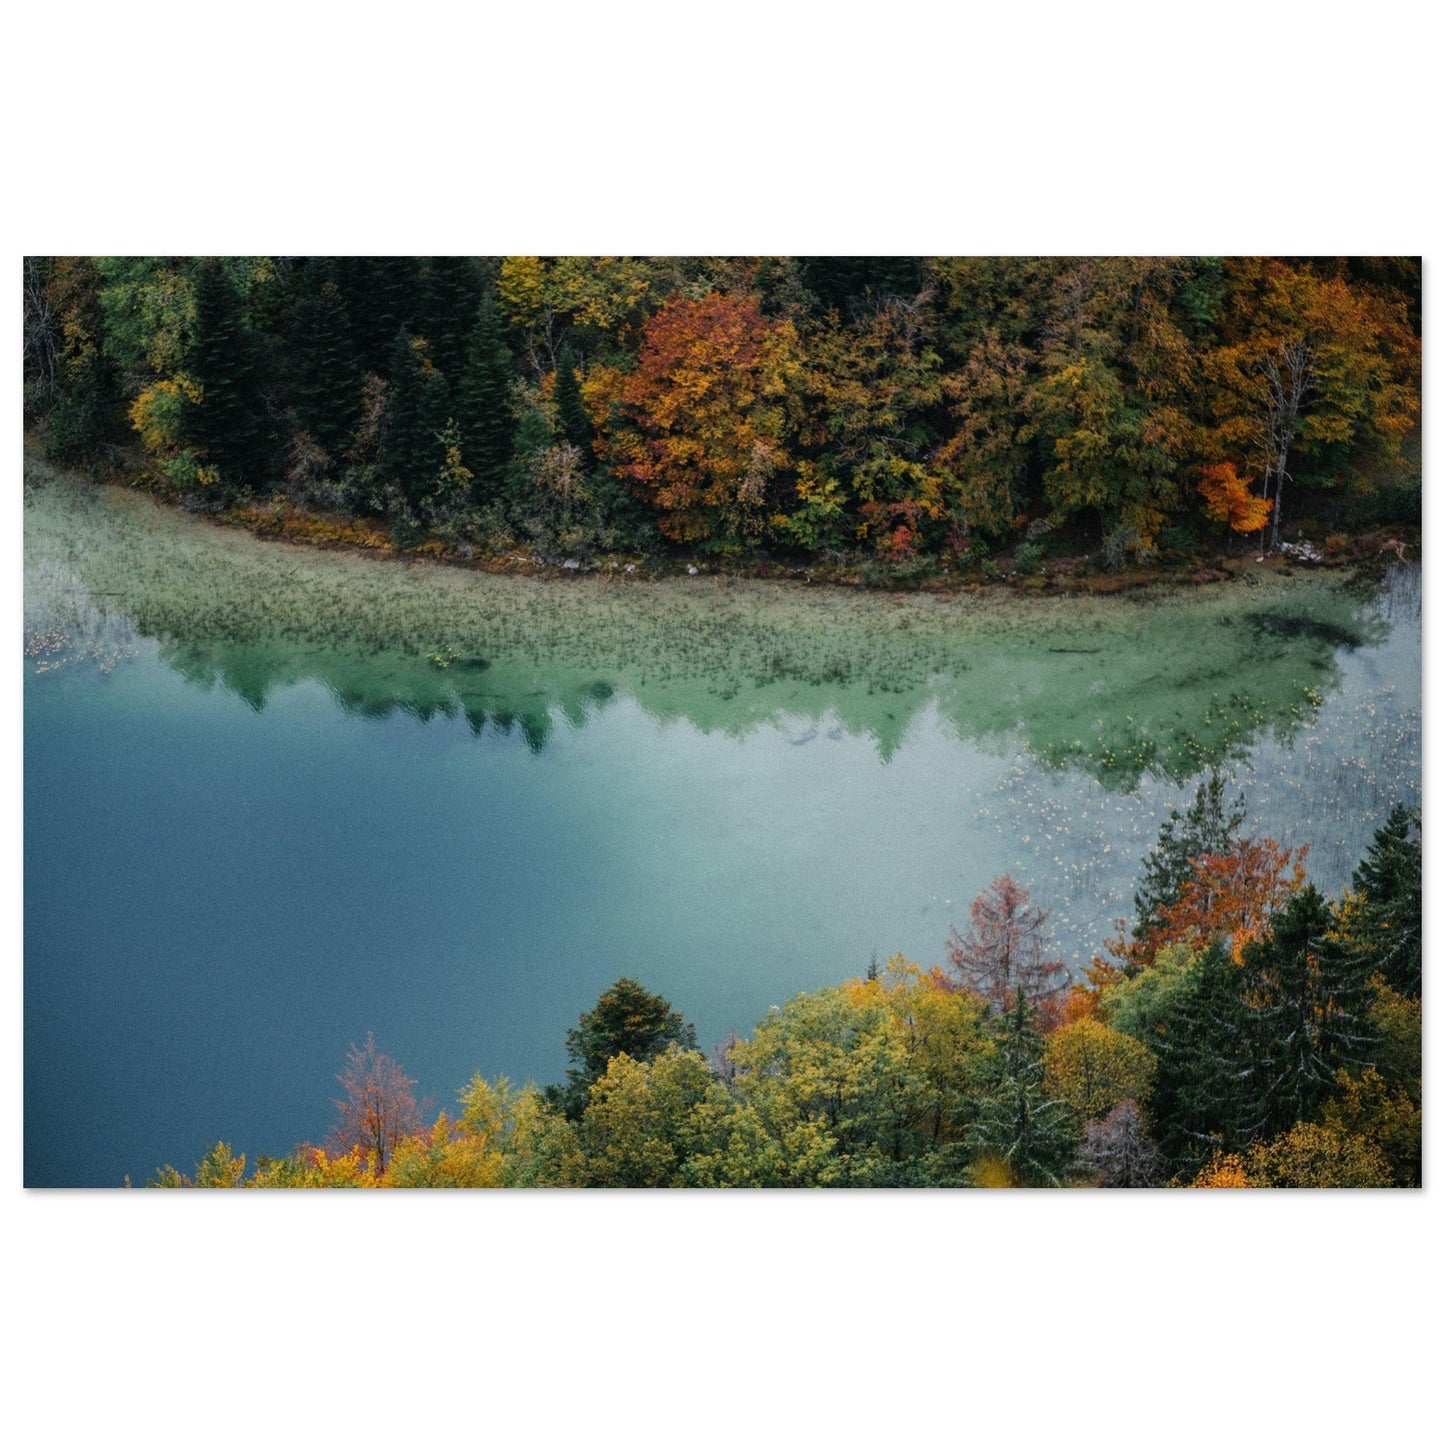 Vente Photo du Jura en automne #5 - Tableau photo alu montagne